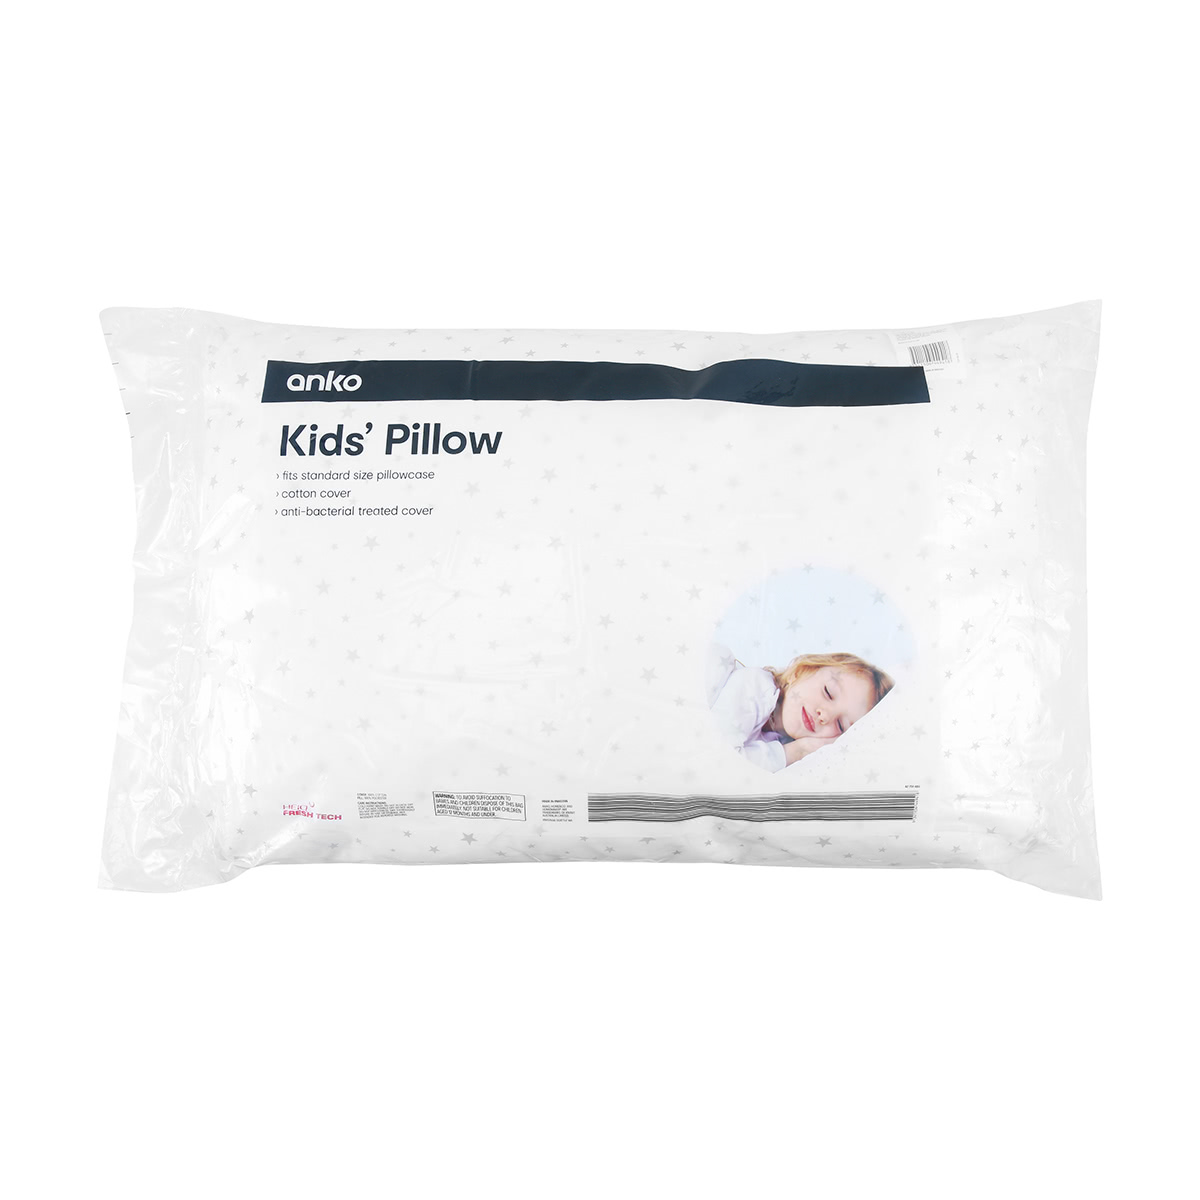 Kids' Pillow